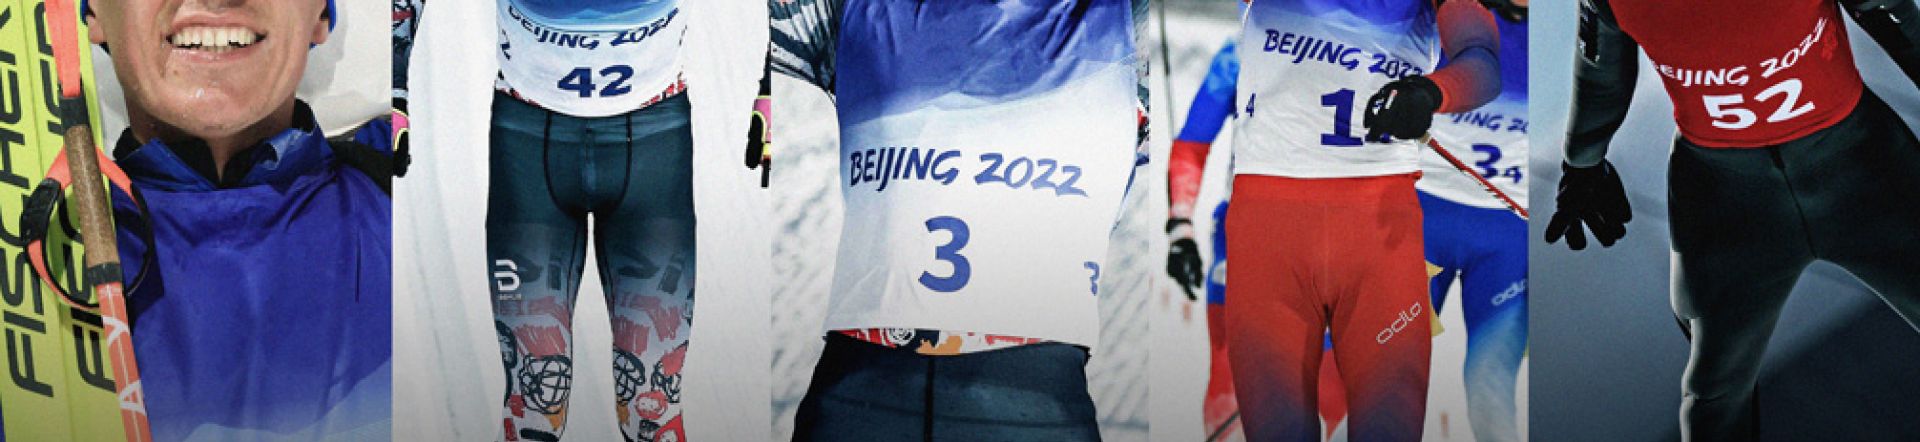 Fischerjeva rumena je dominantna barva na olimpijskih odrih v Pekingu